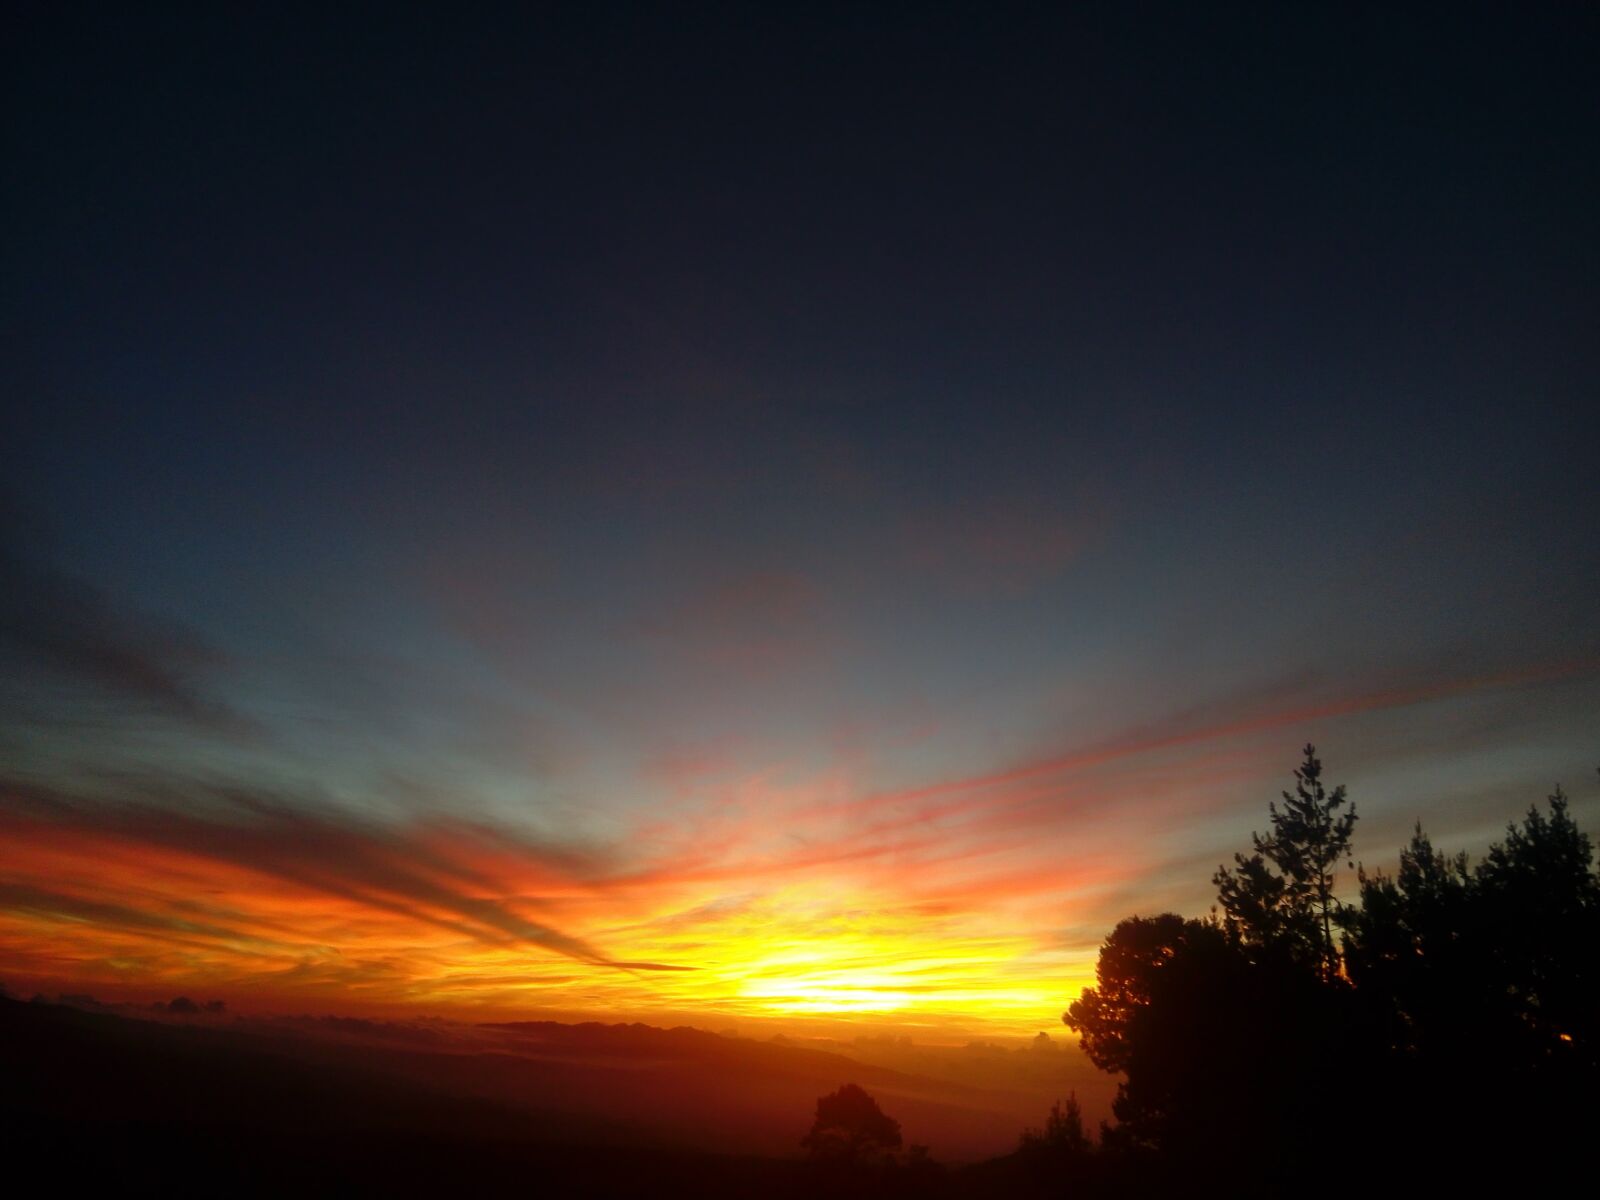 LG G3 Stylus sample photo. Sunset, sky, nature photography